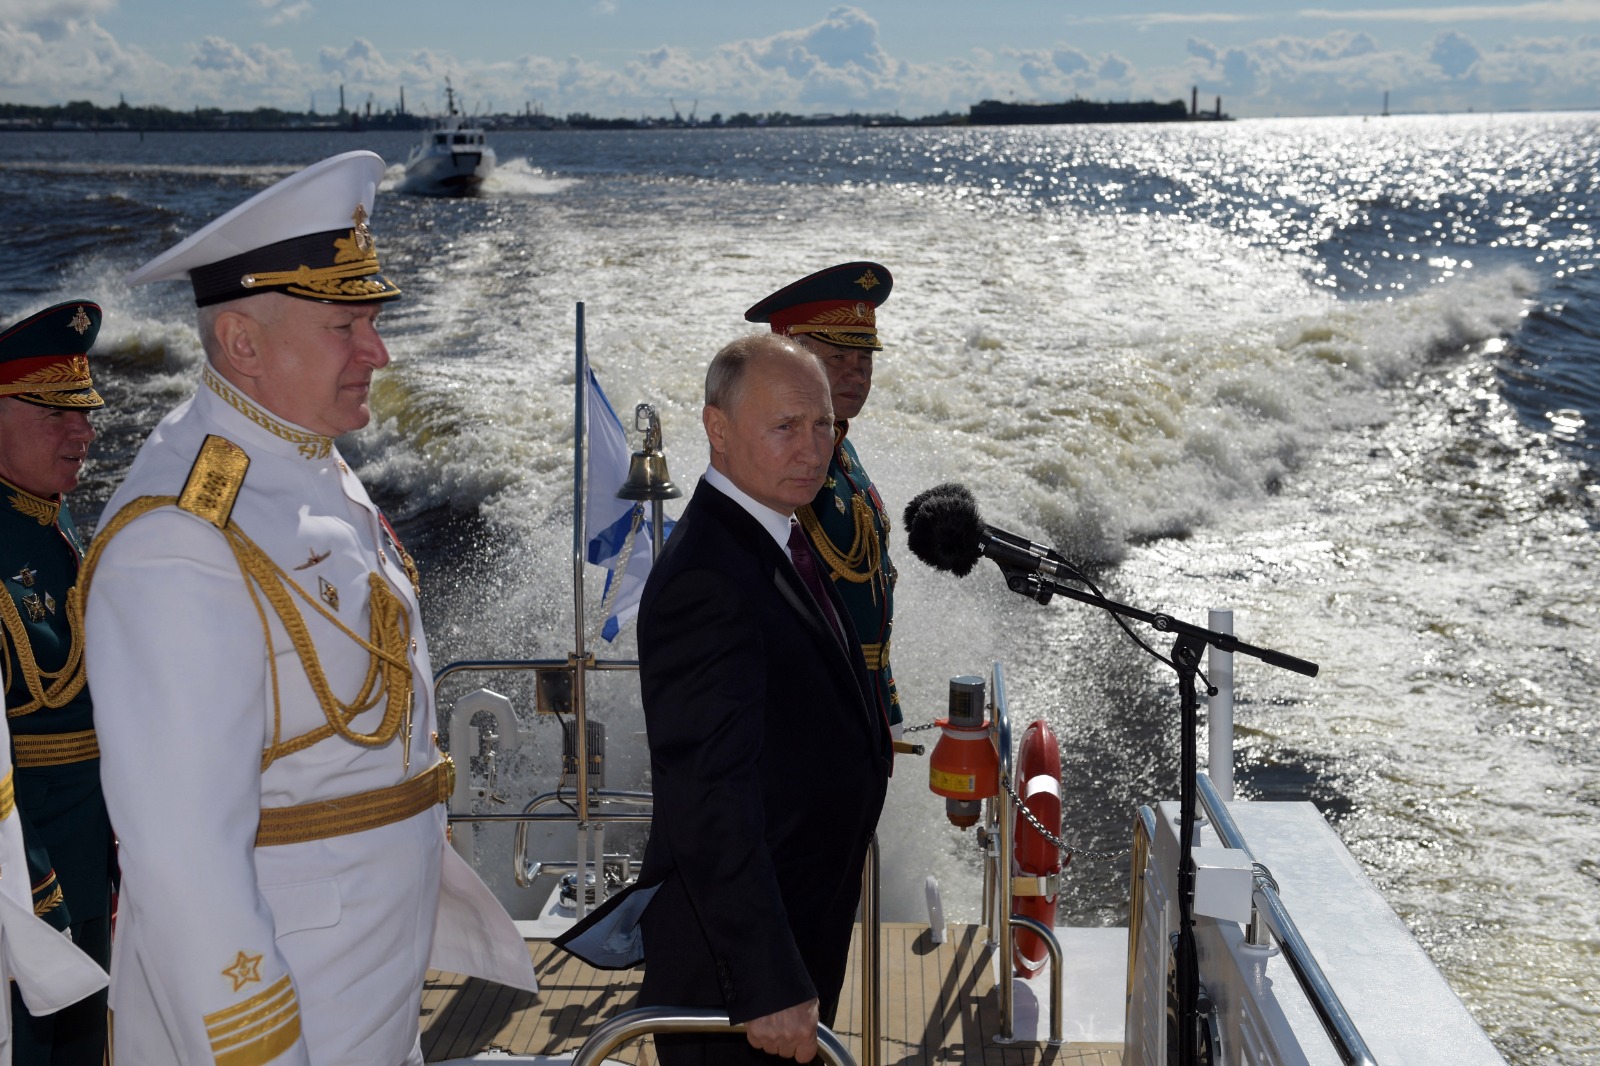 الرئيس الروسي فلاديمير بوتين (إلى اليمين) والقائد العام للبحرية الروسية نيكولاي يفمينوف يصلان لحضور عرض للأسطول الروسي كجزء من الاحتفال بيوم البحرية في سانت بطرسبرغ.28 يوليو 2019.